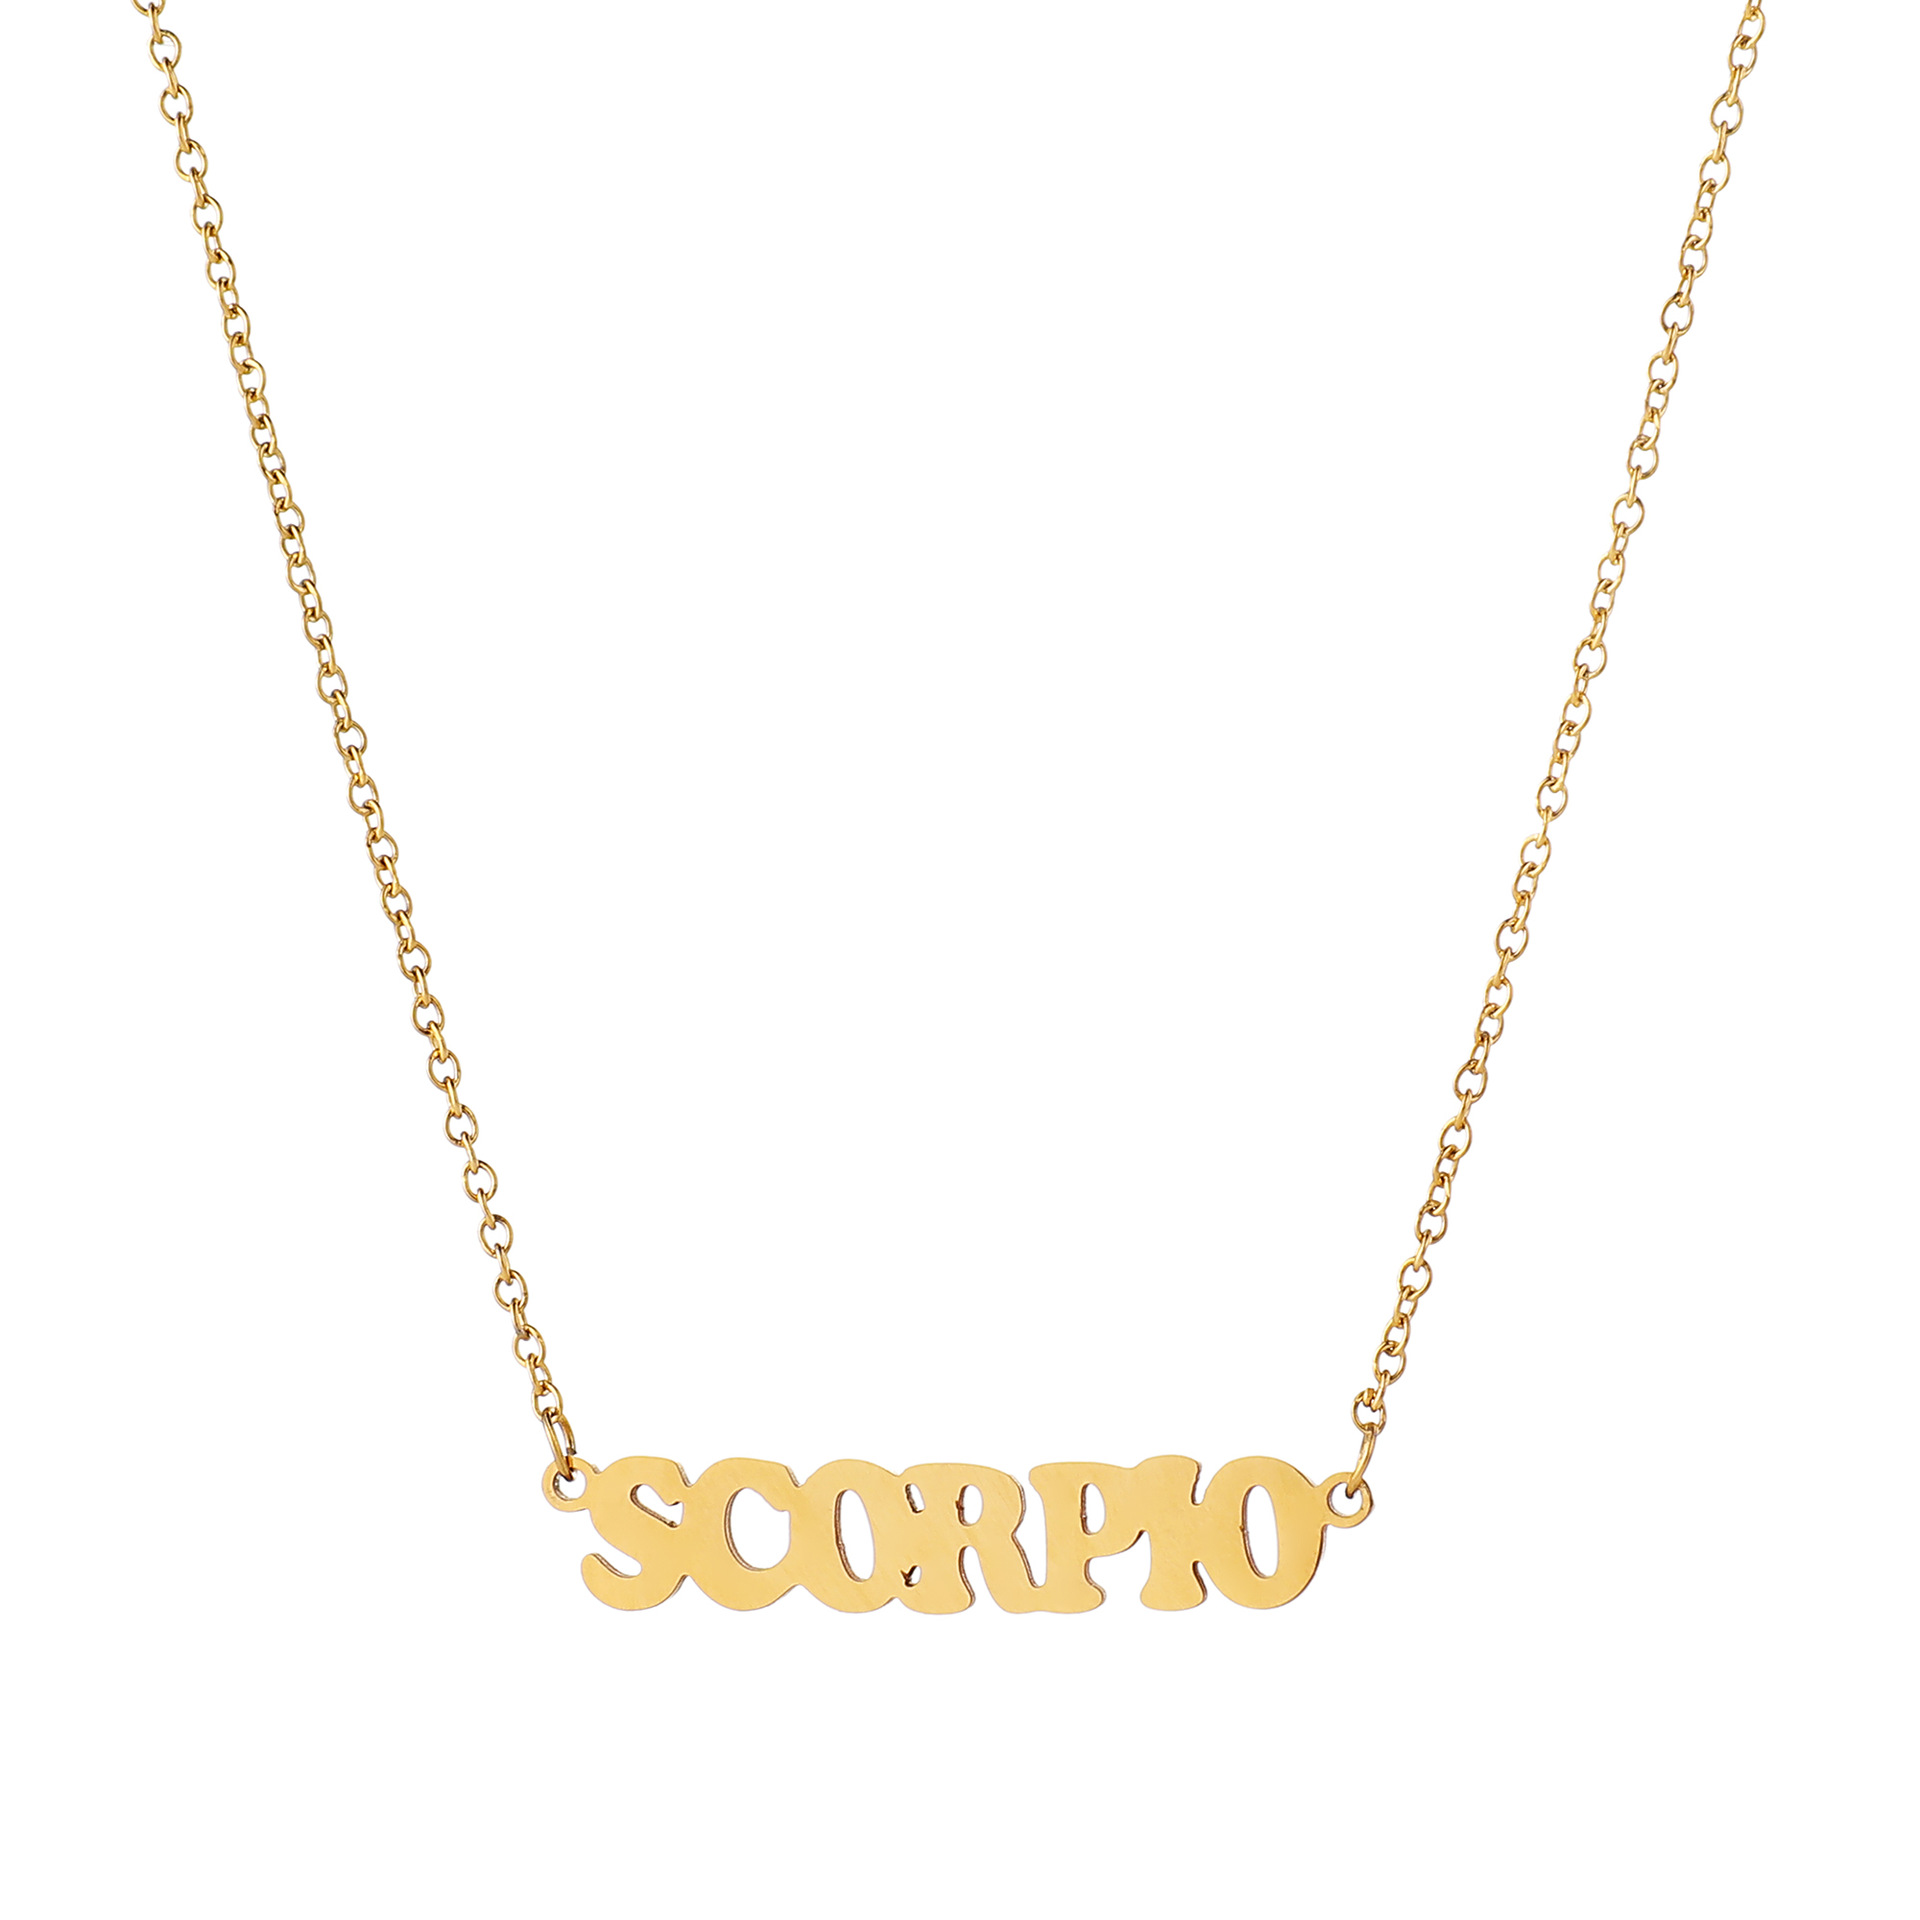 10:Scorpio